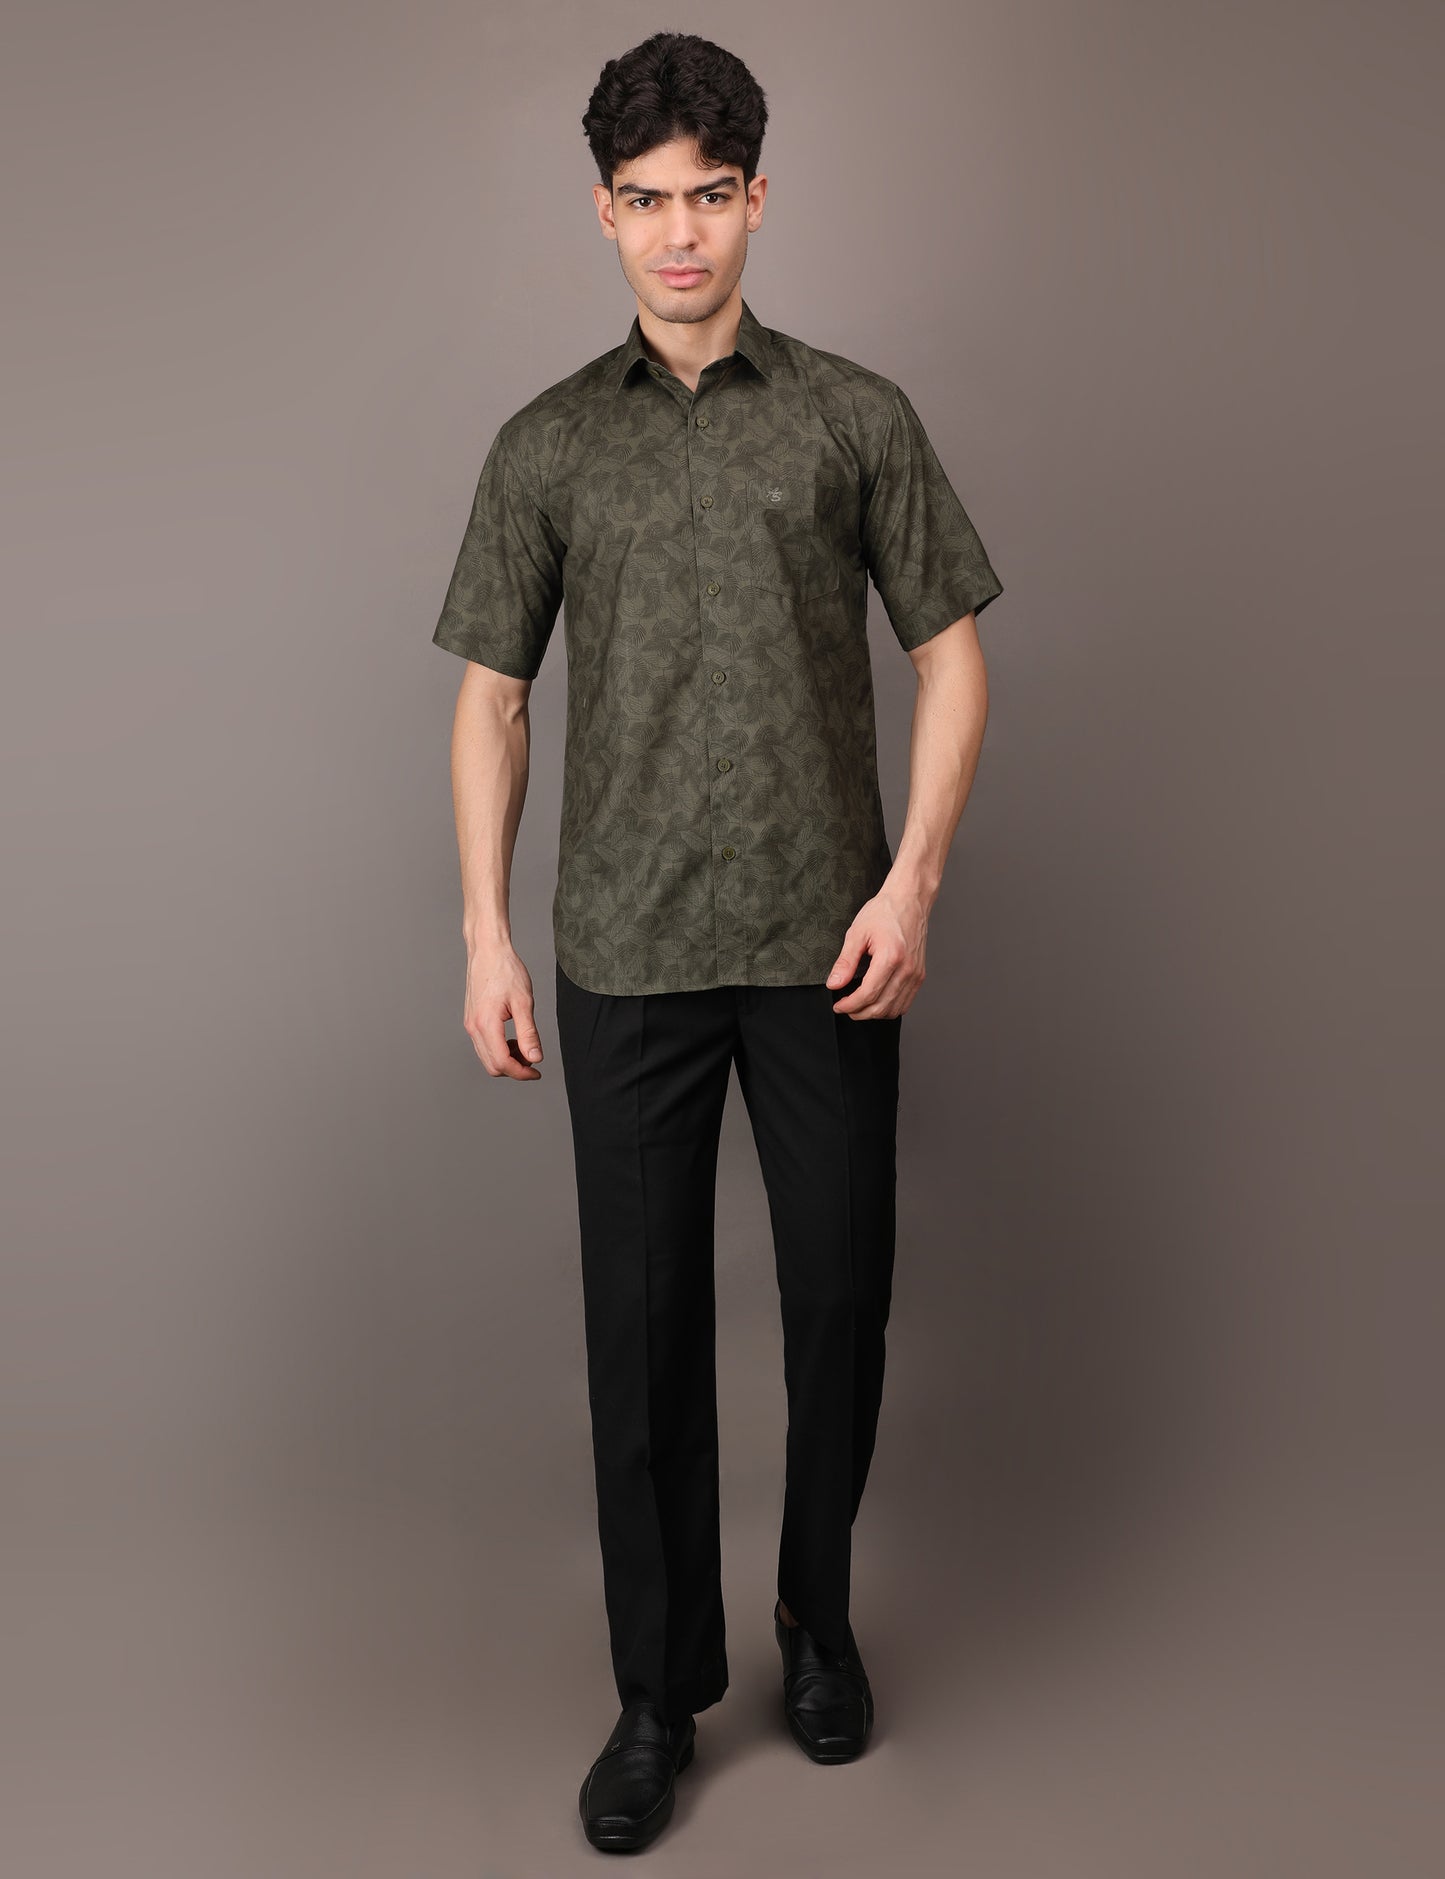 Olive Green Leaf pattern shirt